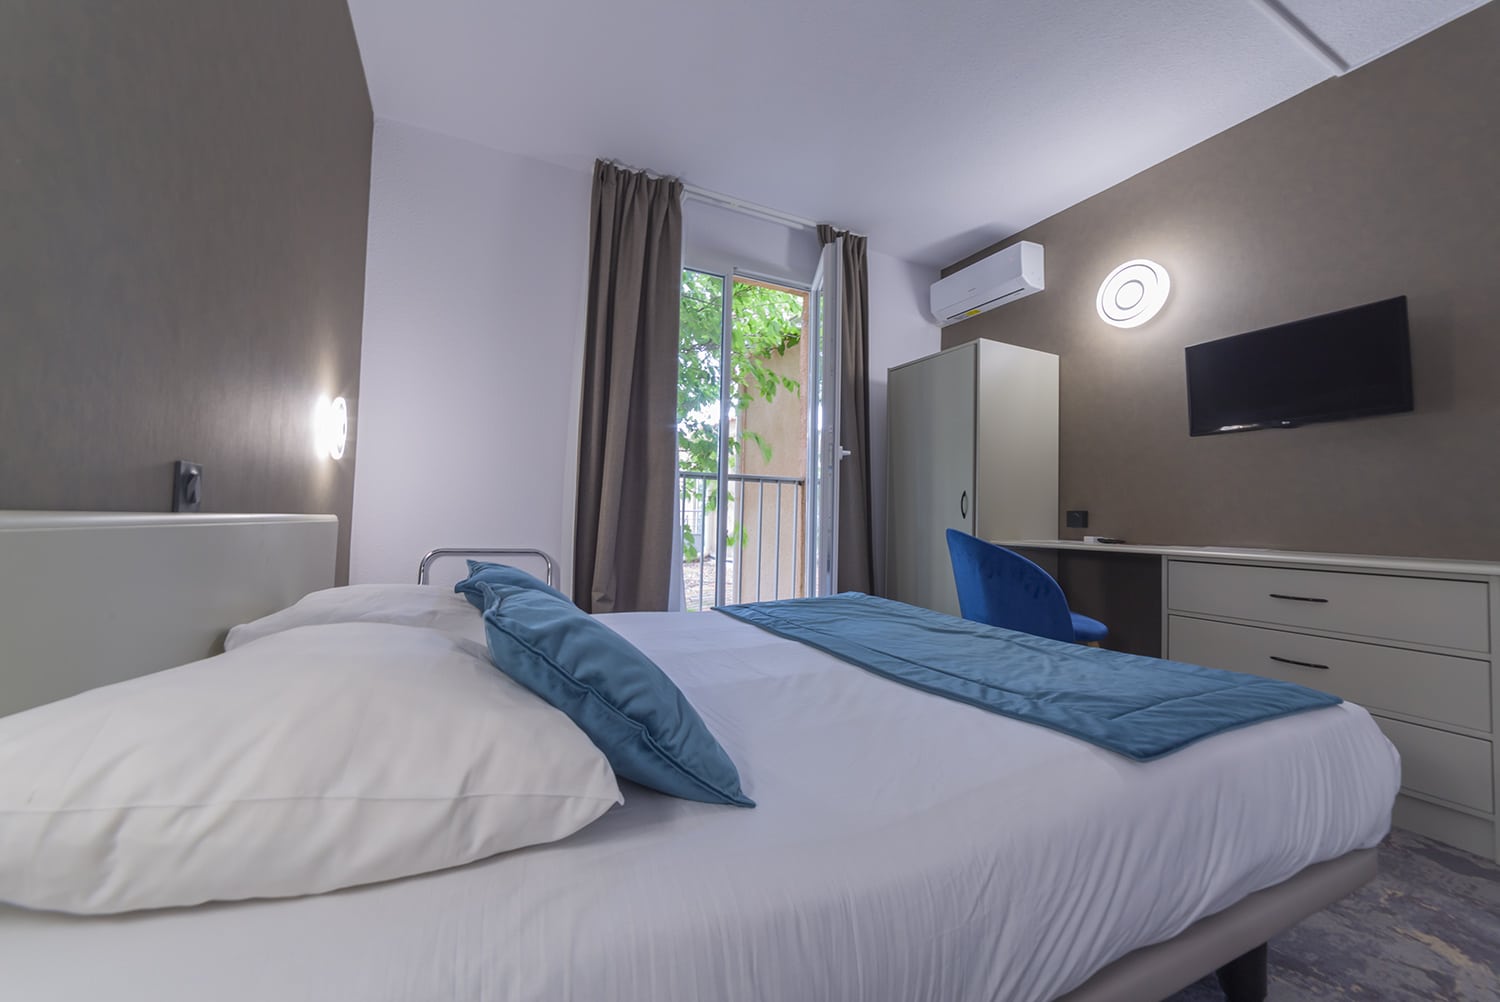 Hôtel Le Barcarès : Chambre Double Standard | tous les équipements nécessaires afin de vous garantir le plus agréable des séjours